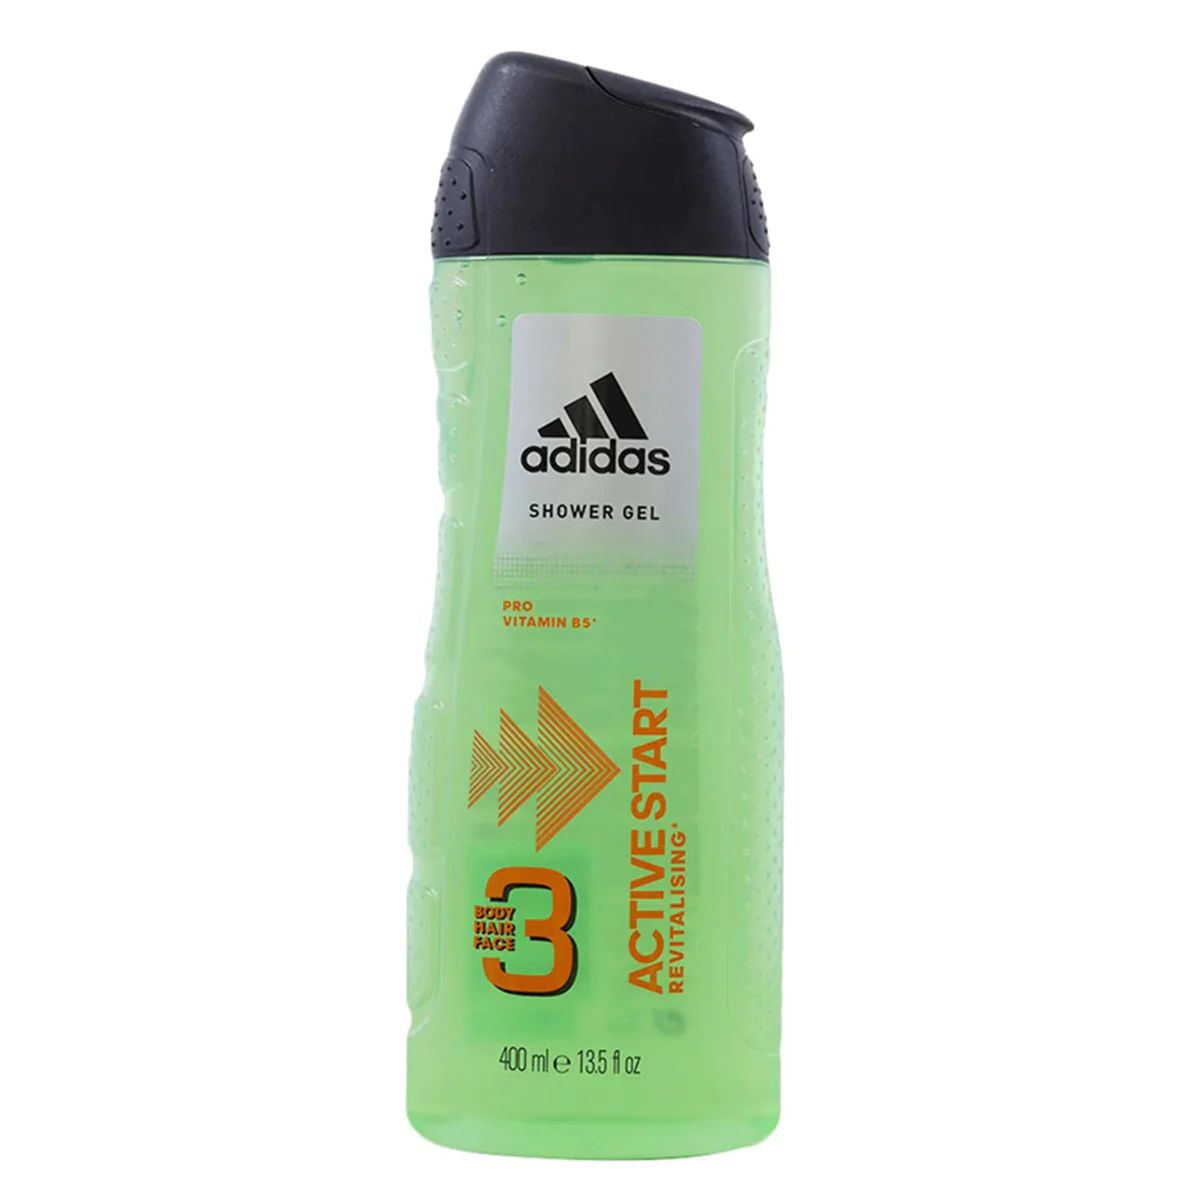 Adidas - Active Start Shower Gel - 400ml bottle with pro vitamin b5.